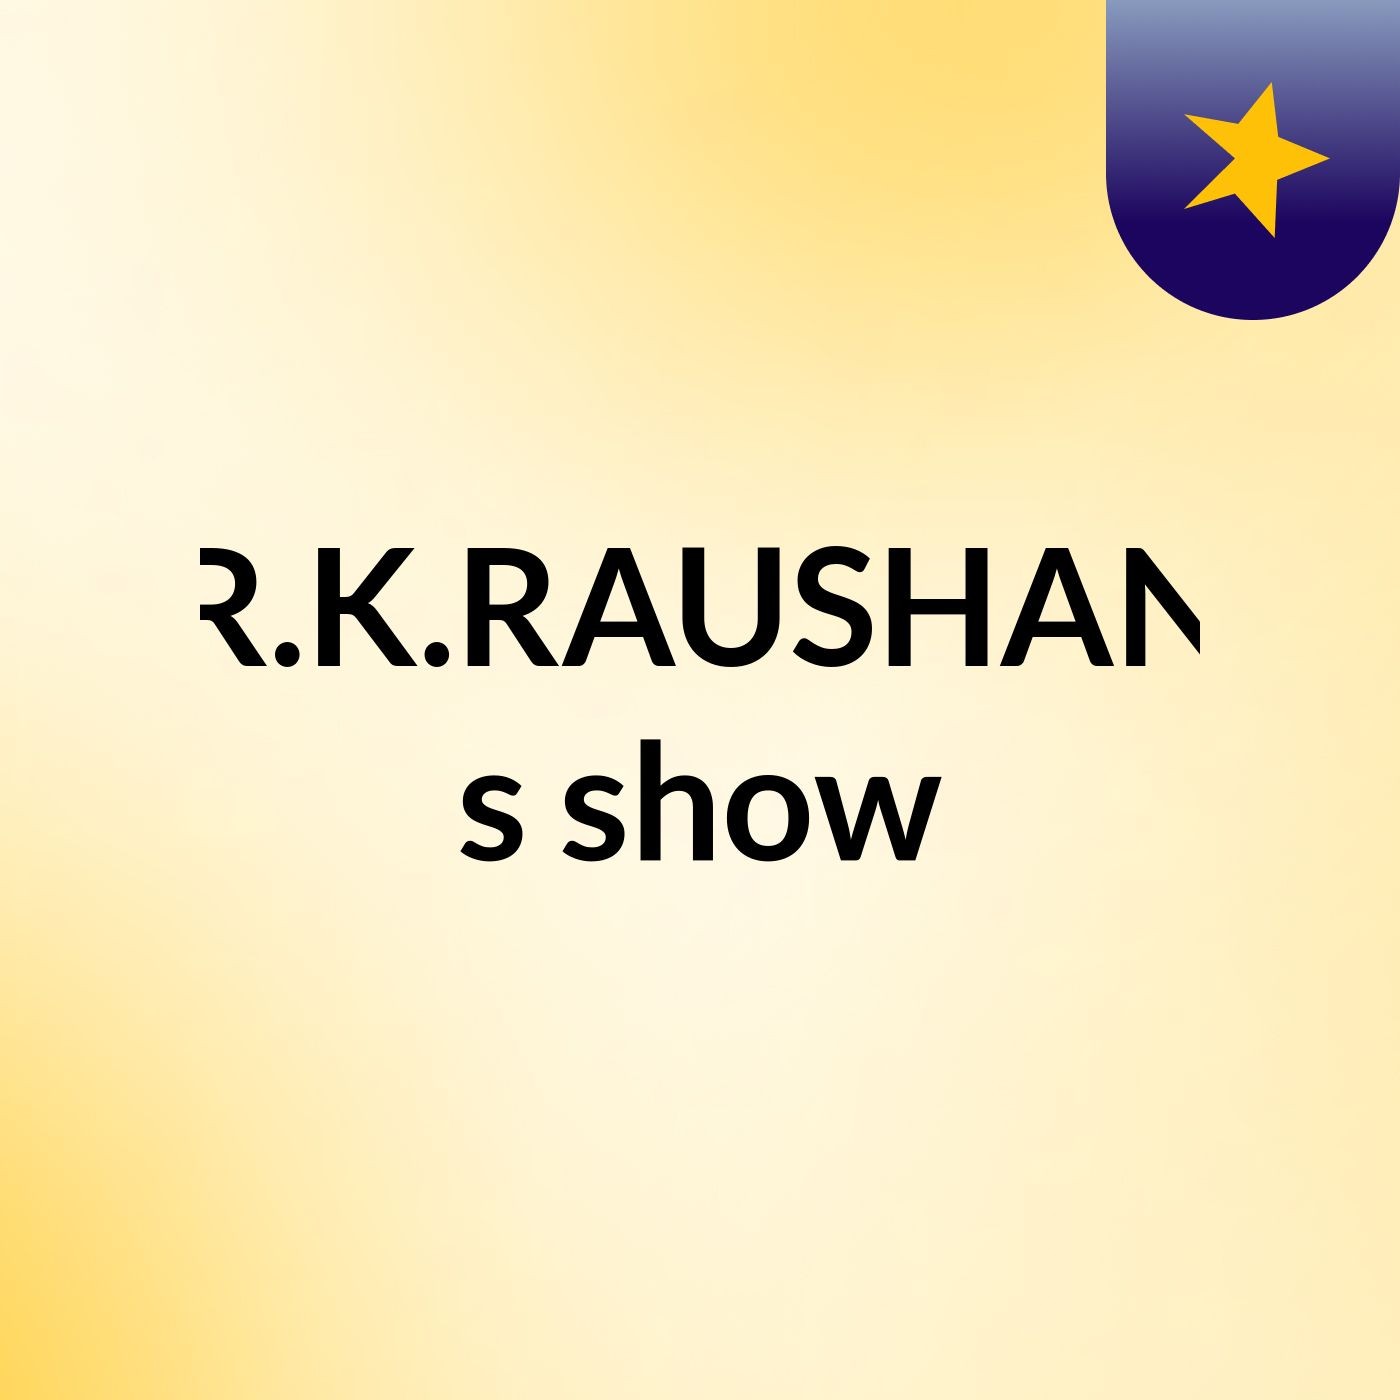 R.K.RAUSHAN's show